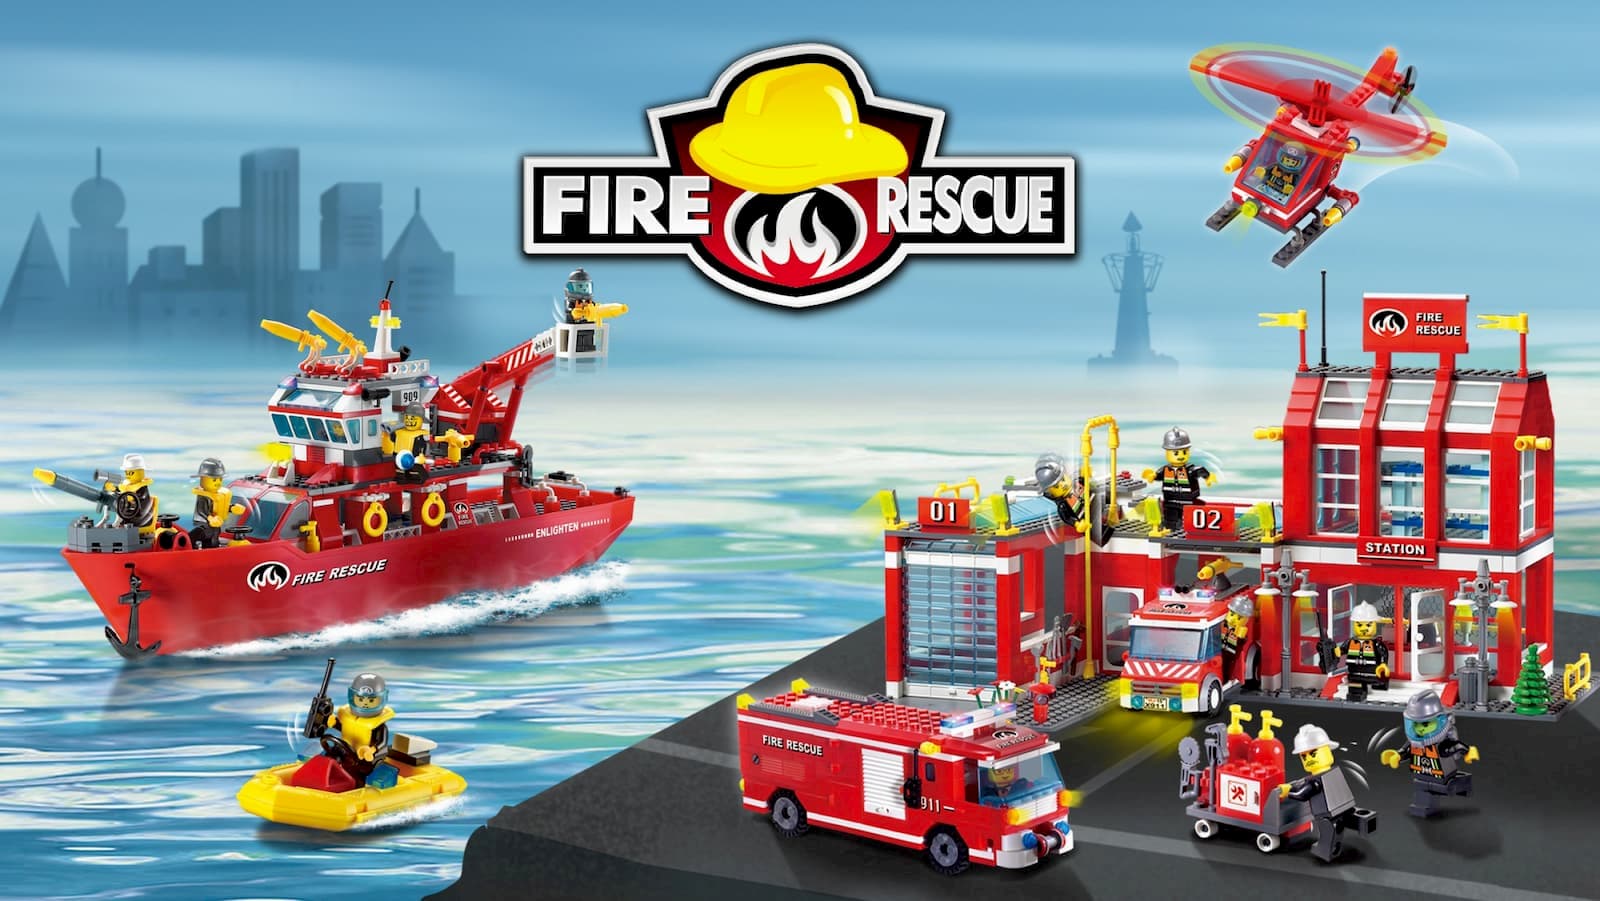 Конструктор Enlighten «Корабль пожарной службы» 909 Fire Rescue / 361 деталь